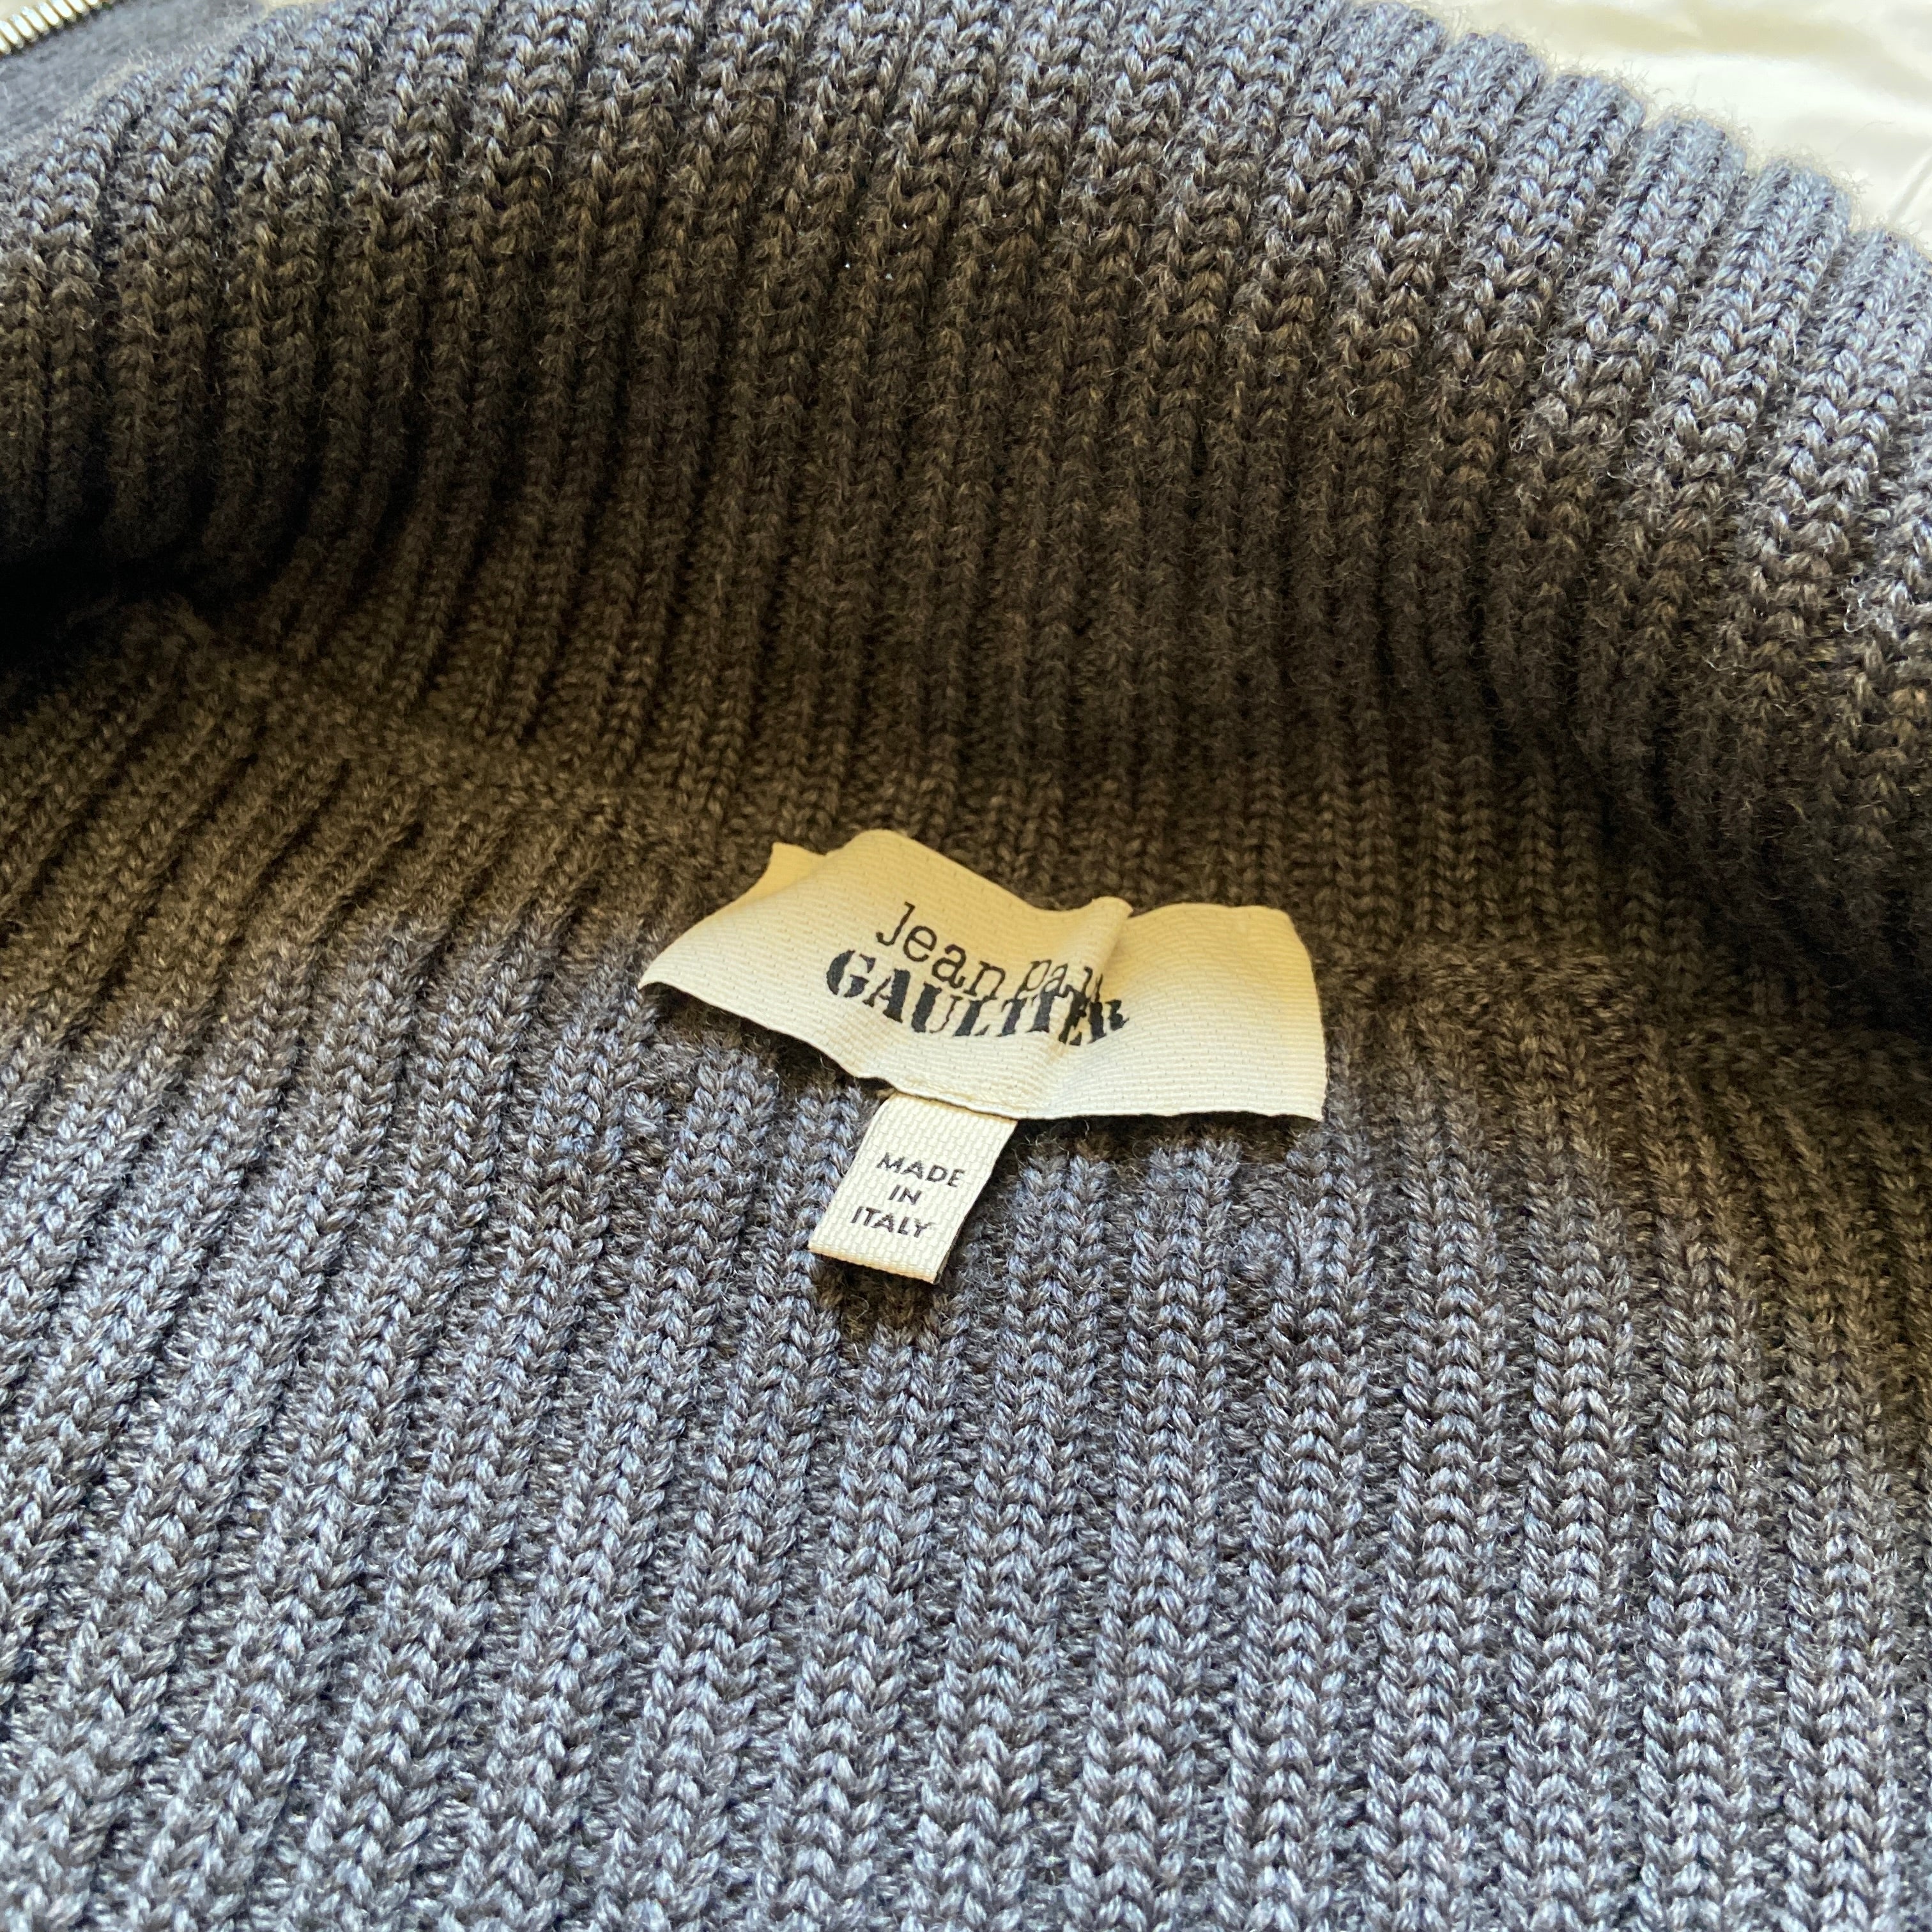 Jean Paul Gaultier Grey knit zip up cardigan XL – Dusty Archive